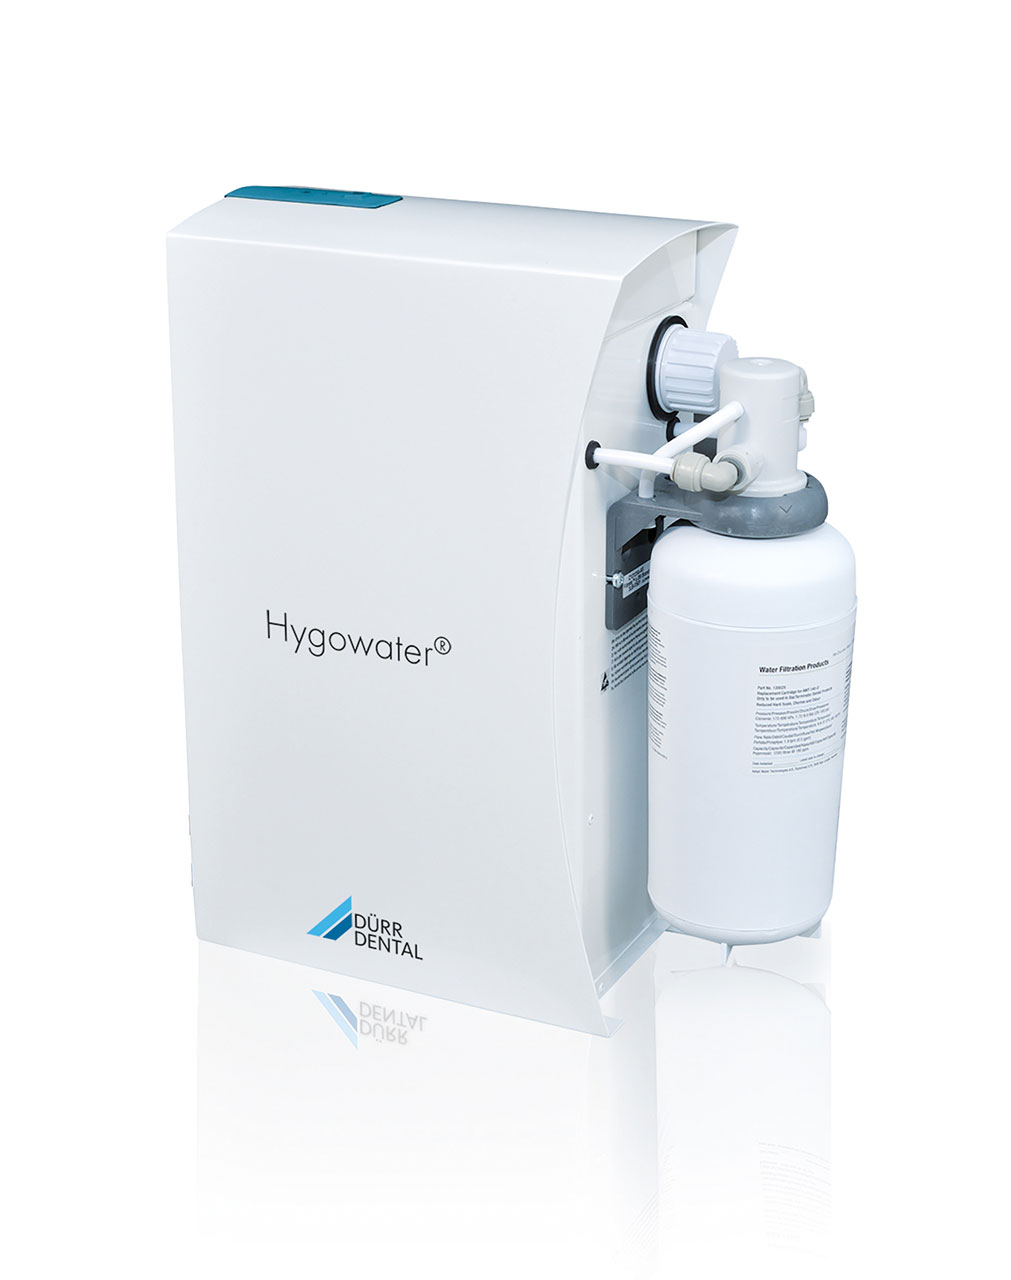 Der Hygowater: für die Wasseraufbereitung mit freier Fallstrecke nach DIN EN 1717 (= „Rückfluss-Schutz“) – eine dezentrale Variante für bis zu zwei Behandlungseinheiten.